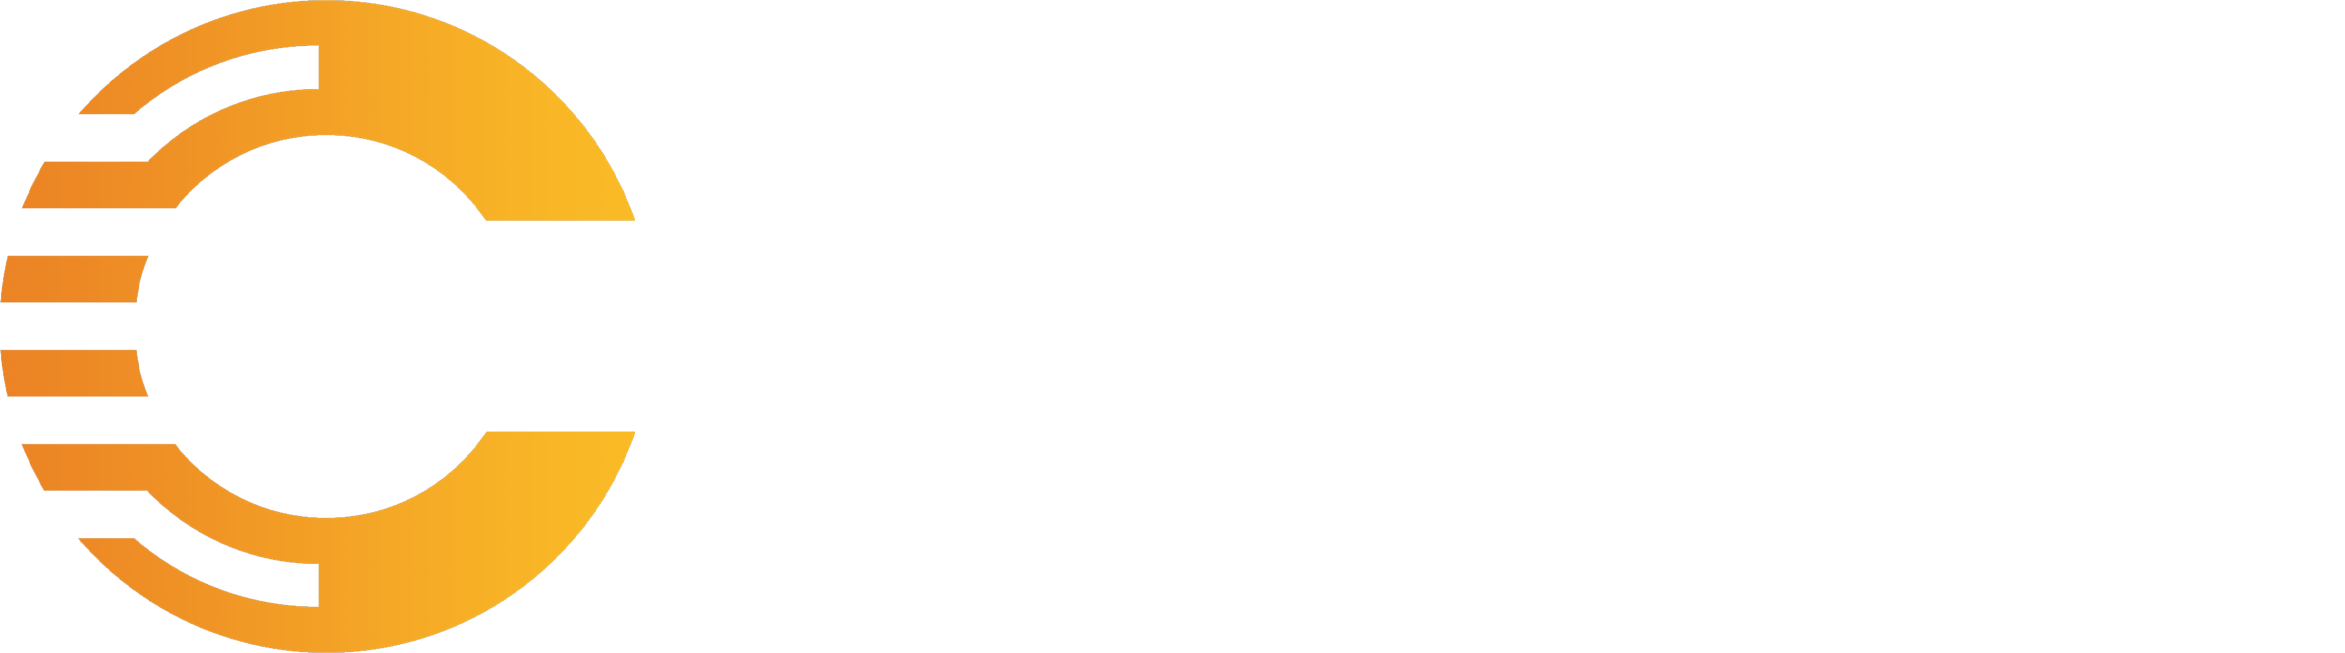 cryptach